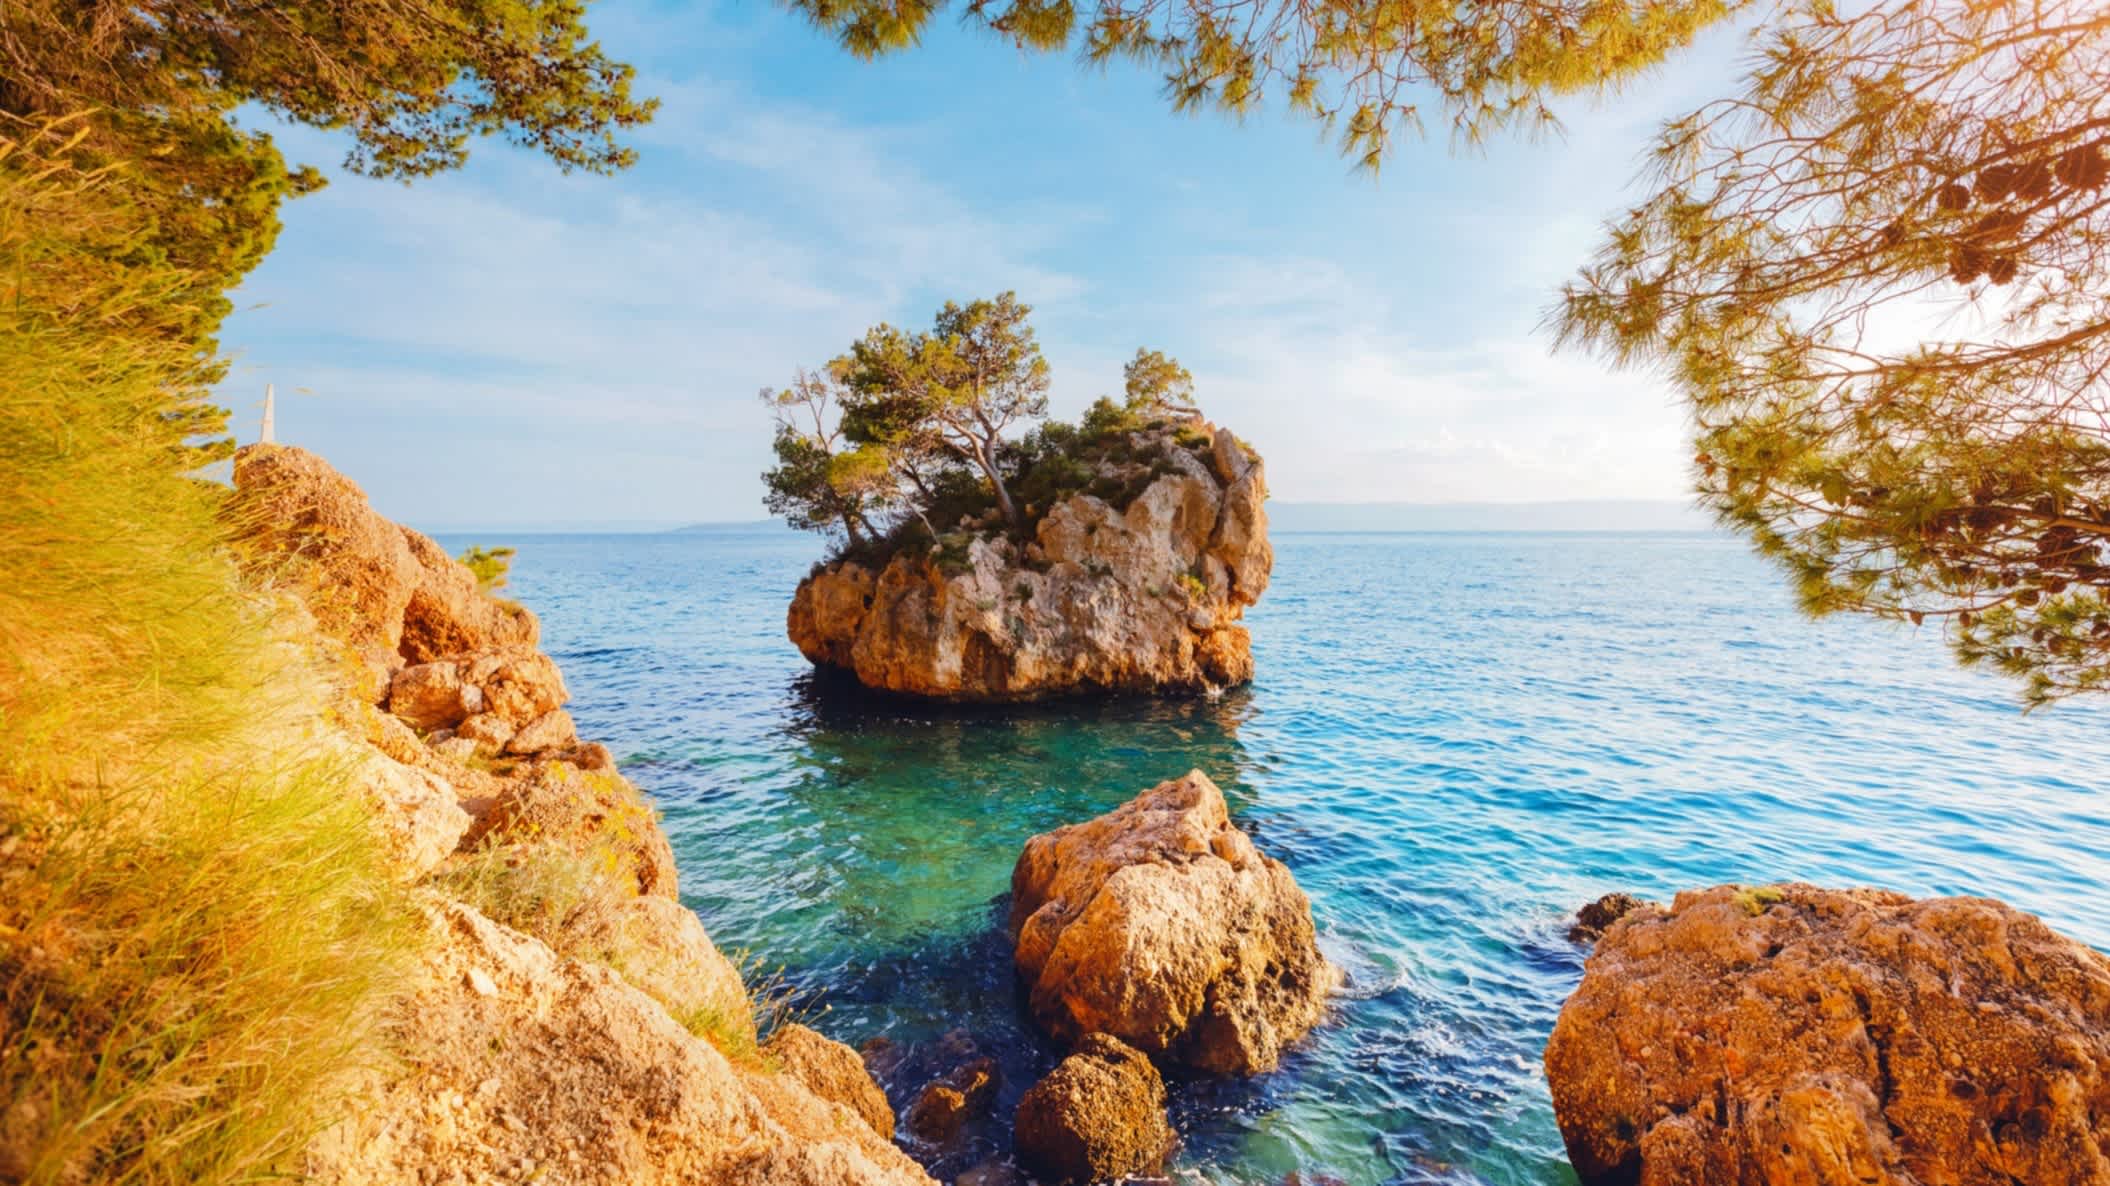 Der Strand von Brela (Punta Rata), Kroatien mit Blick durch Felsen auf einen großen Felsen im Wasser.